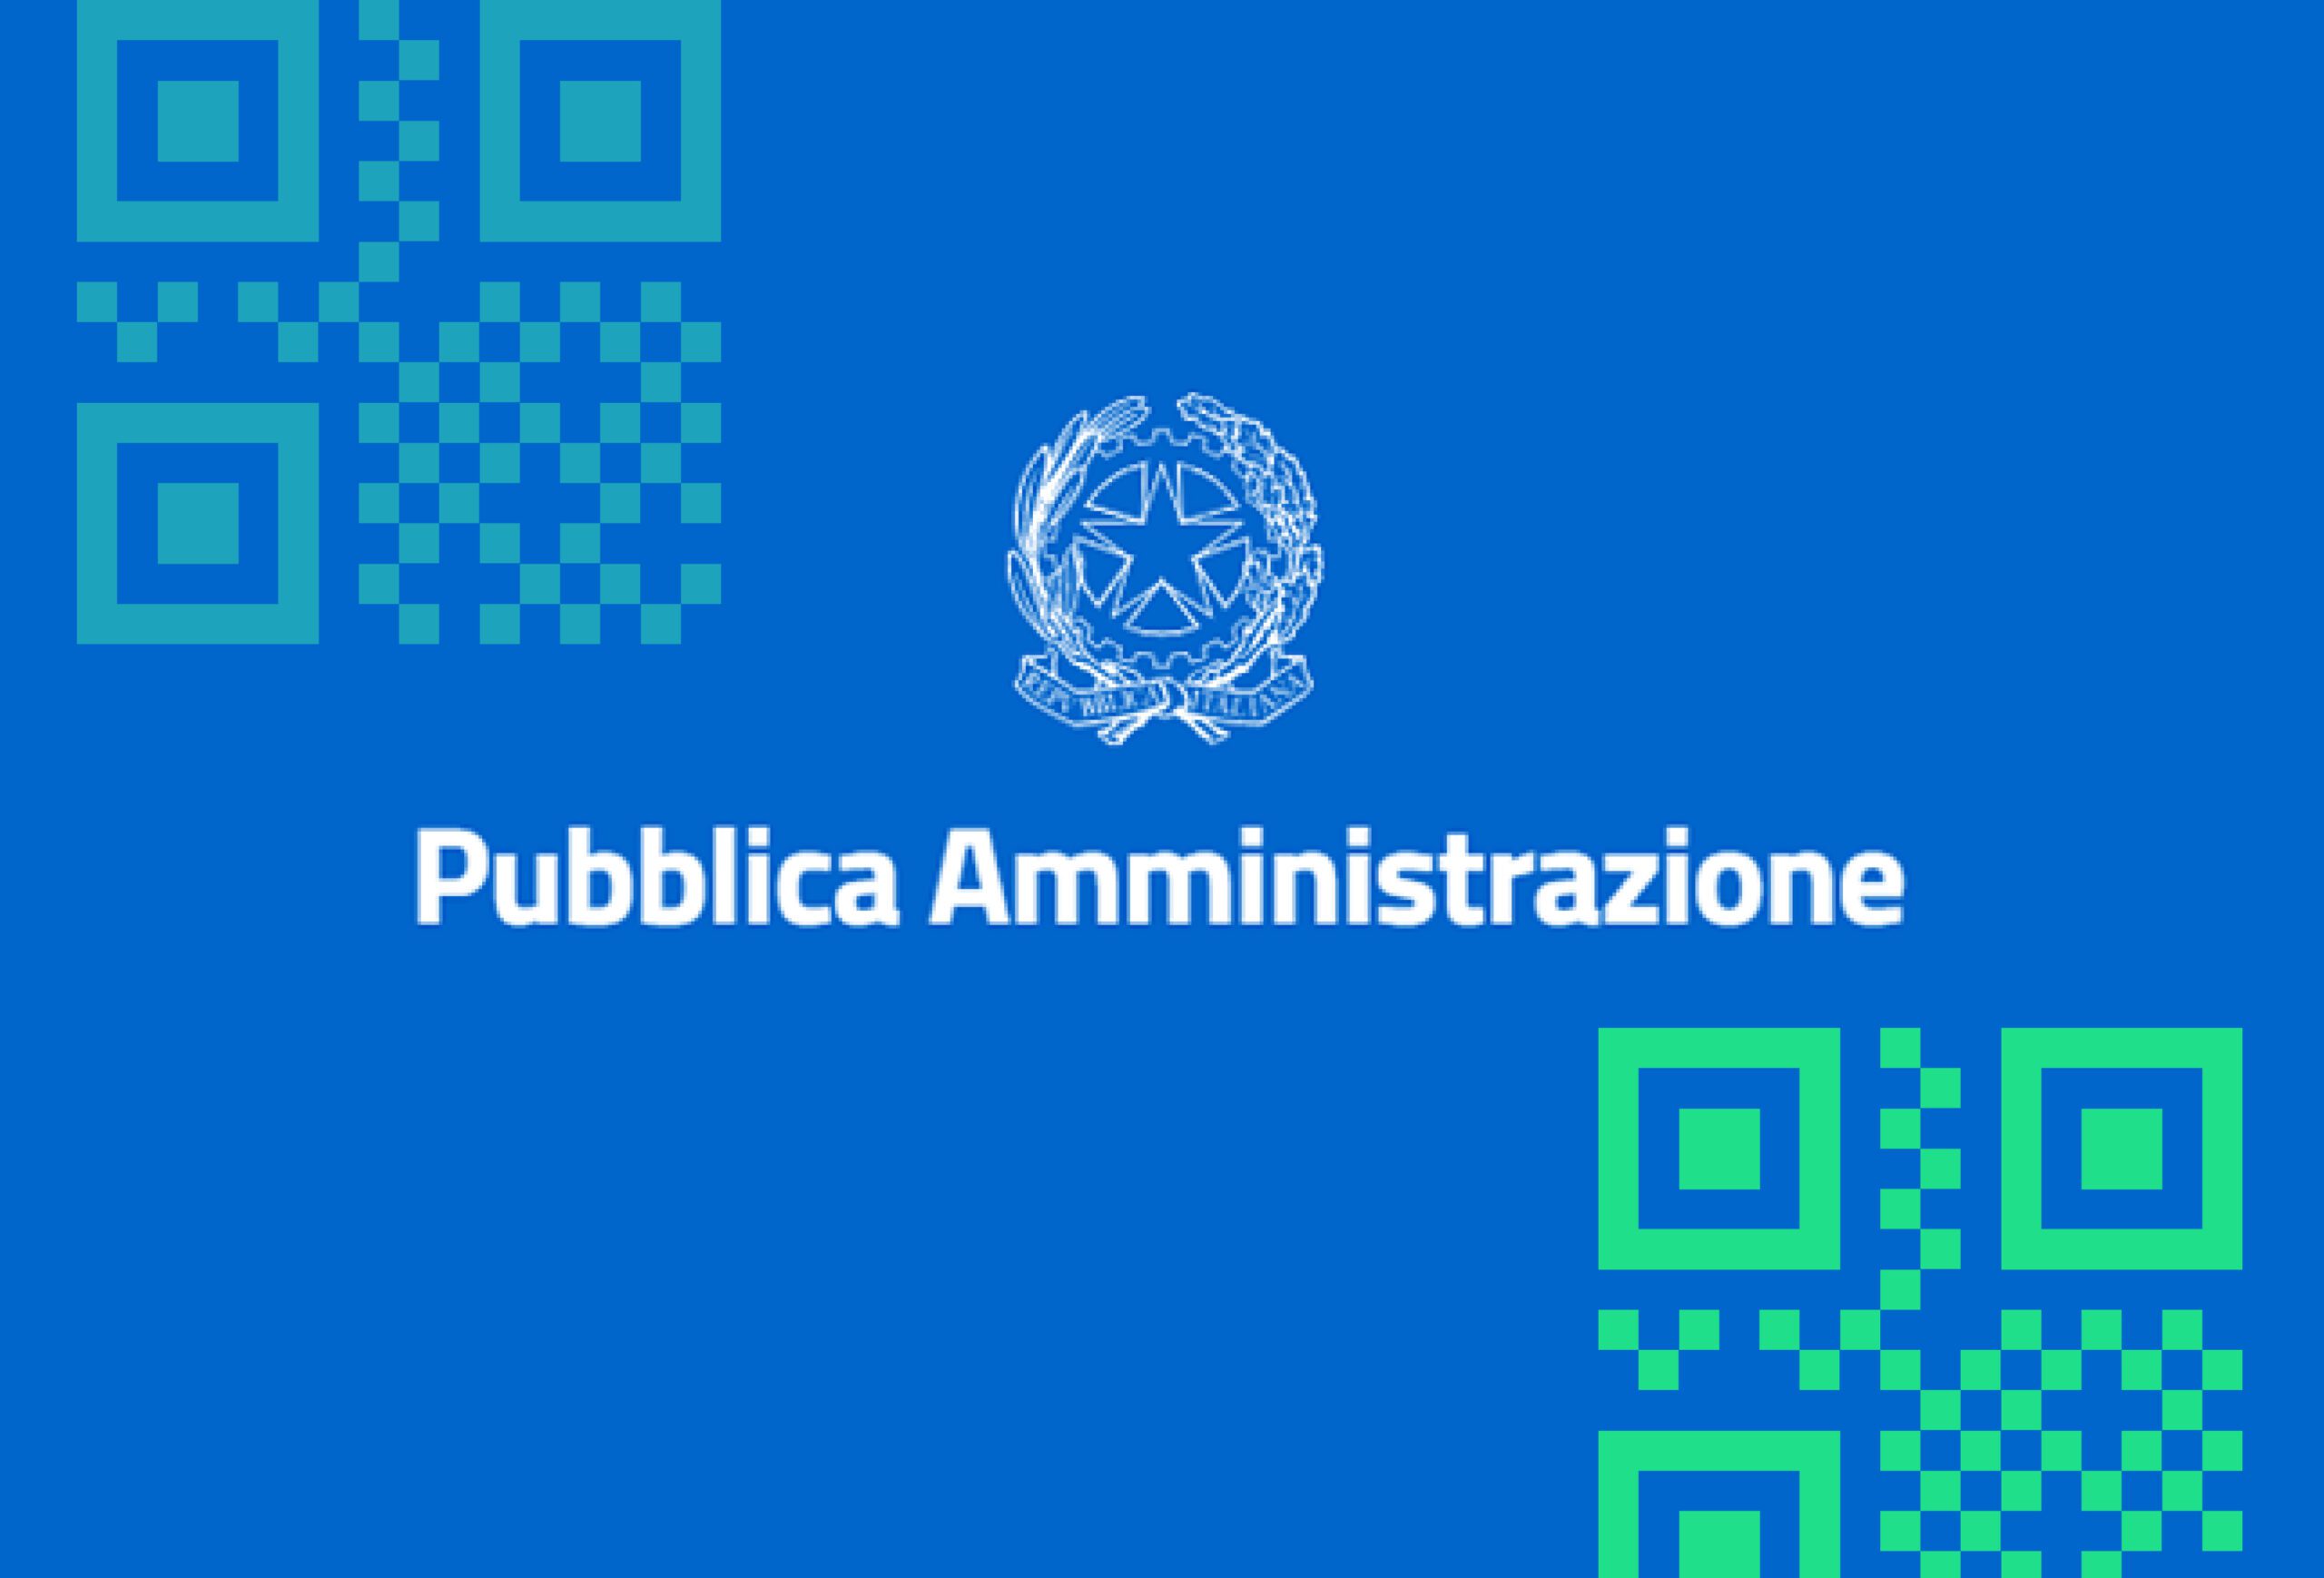 QR Code Dinamici: L’Innovazione Digitale al Servizio delle Pubbliche Amministrazioni